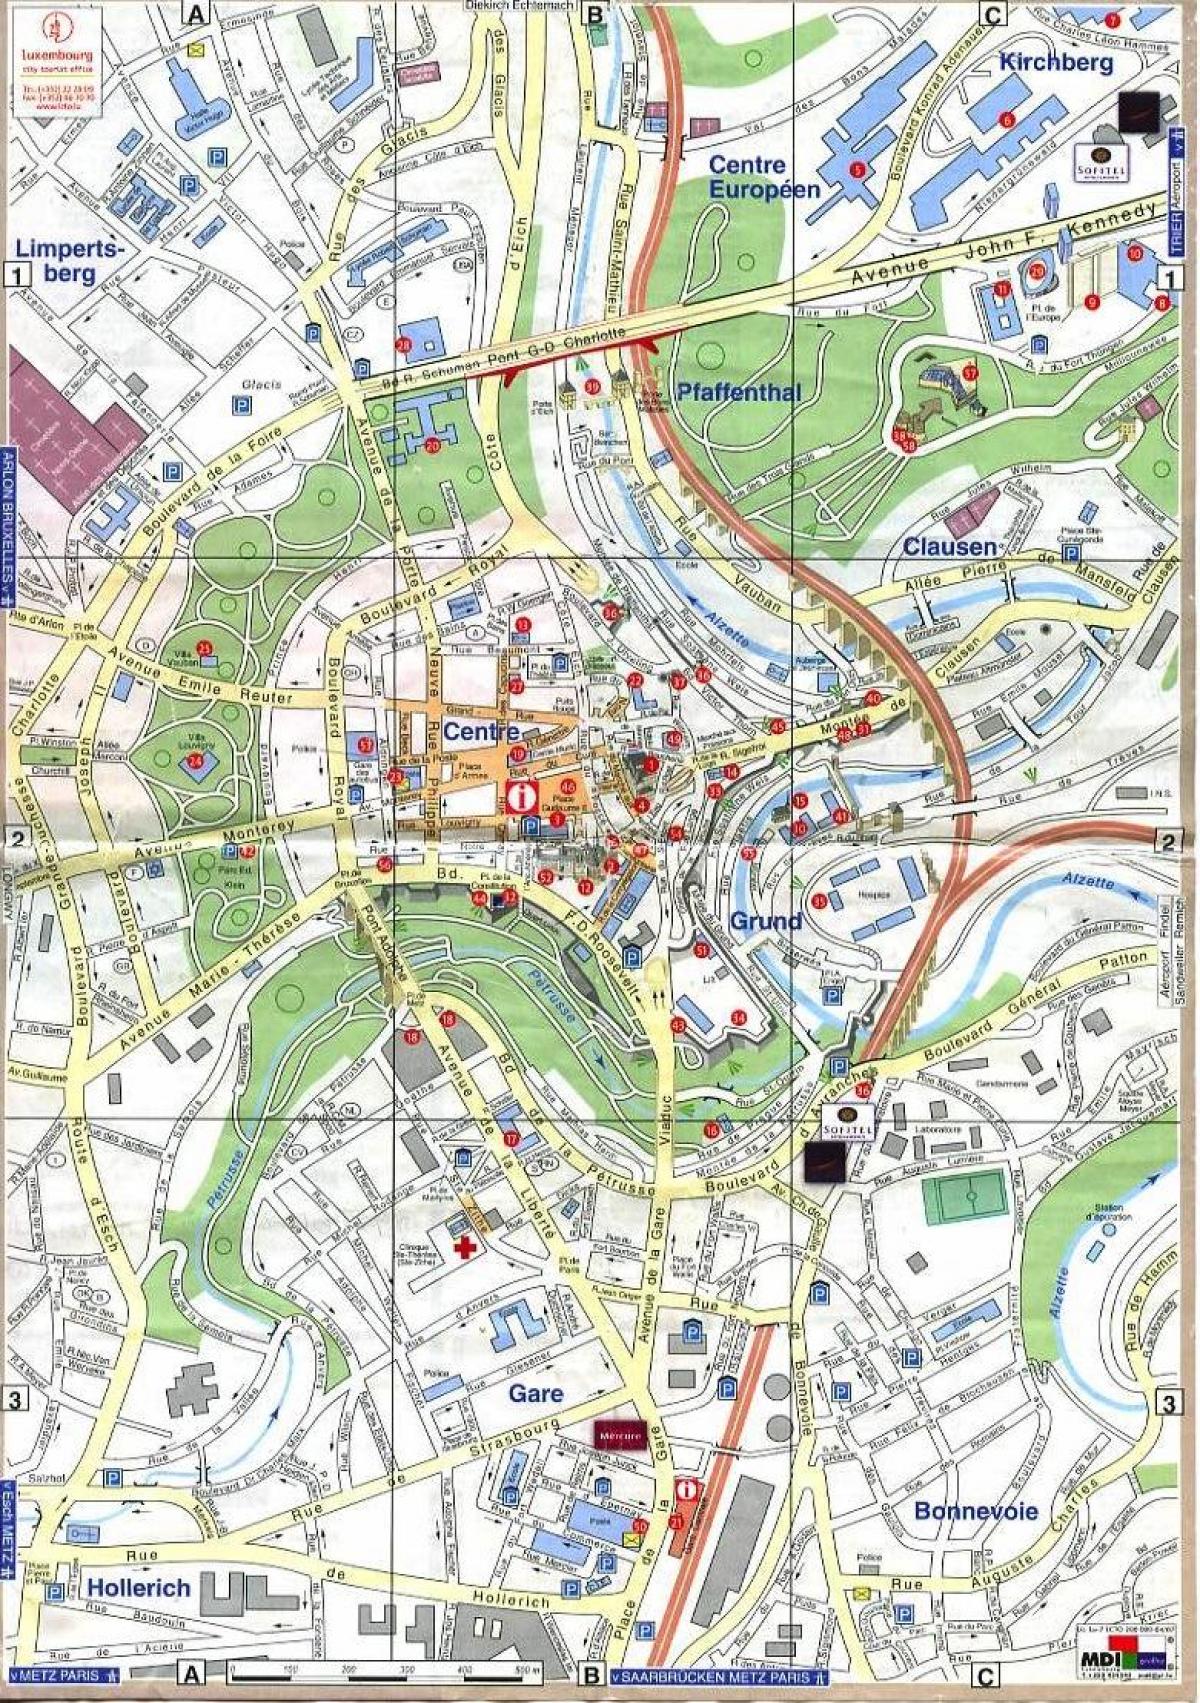 नक्शा लक्समबर्ग के पुराने शहर